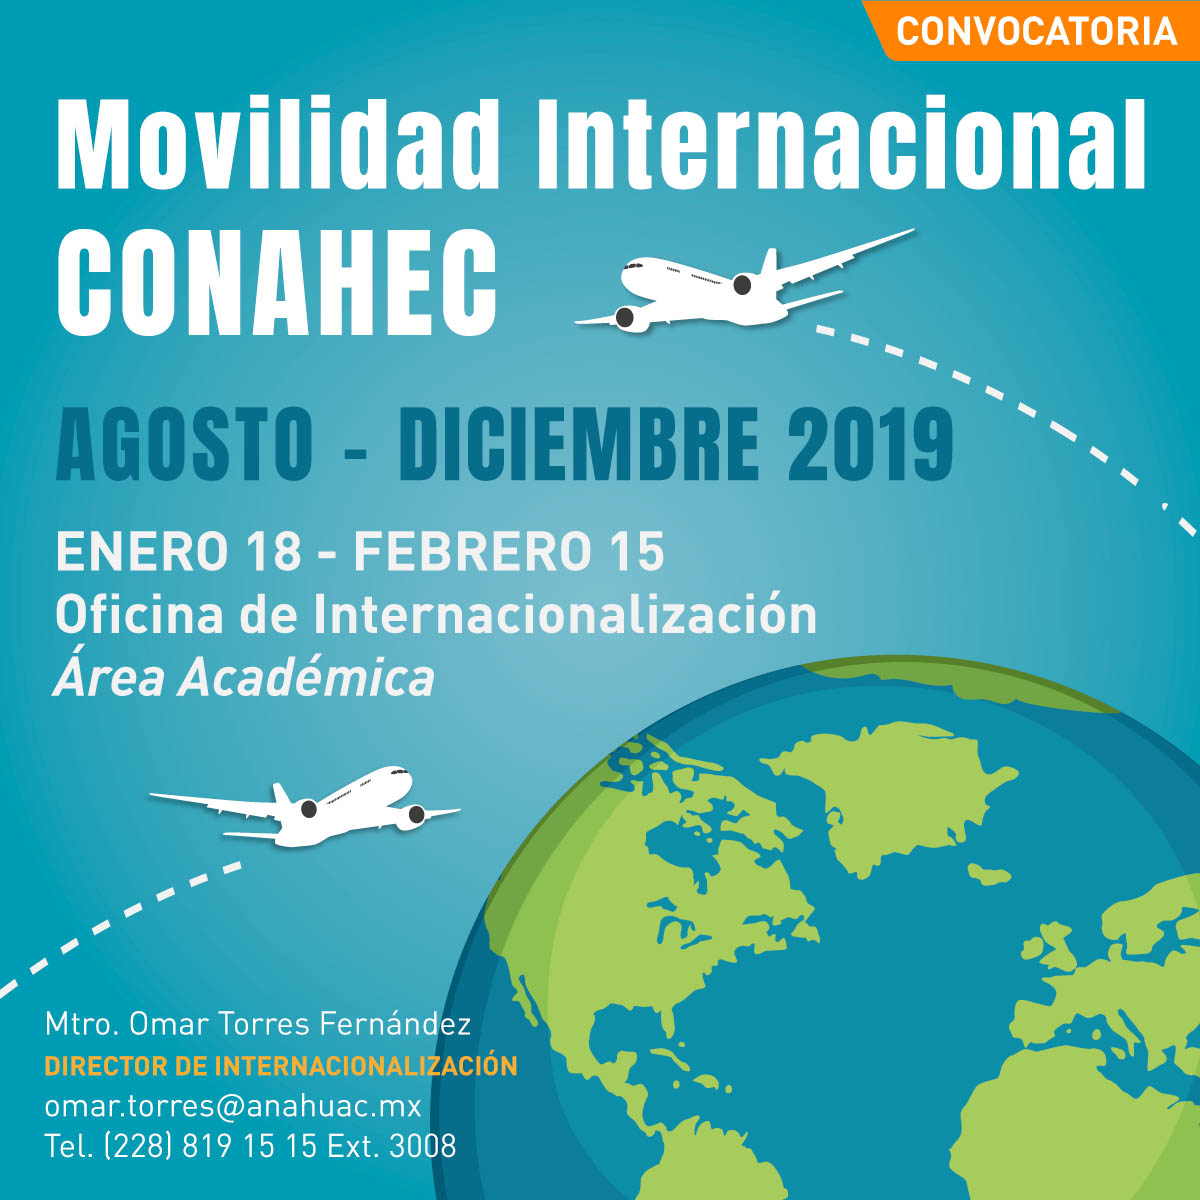 Convocatoria de Movilidad Internacional CONAHEC 2019